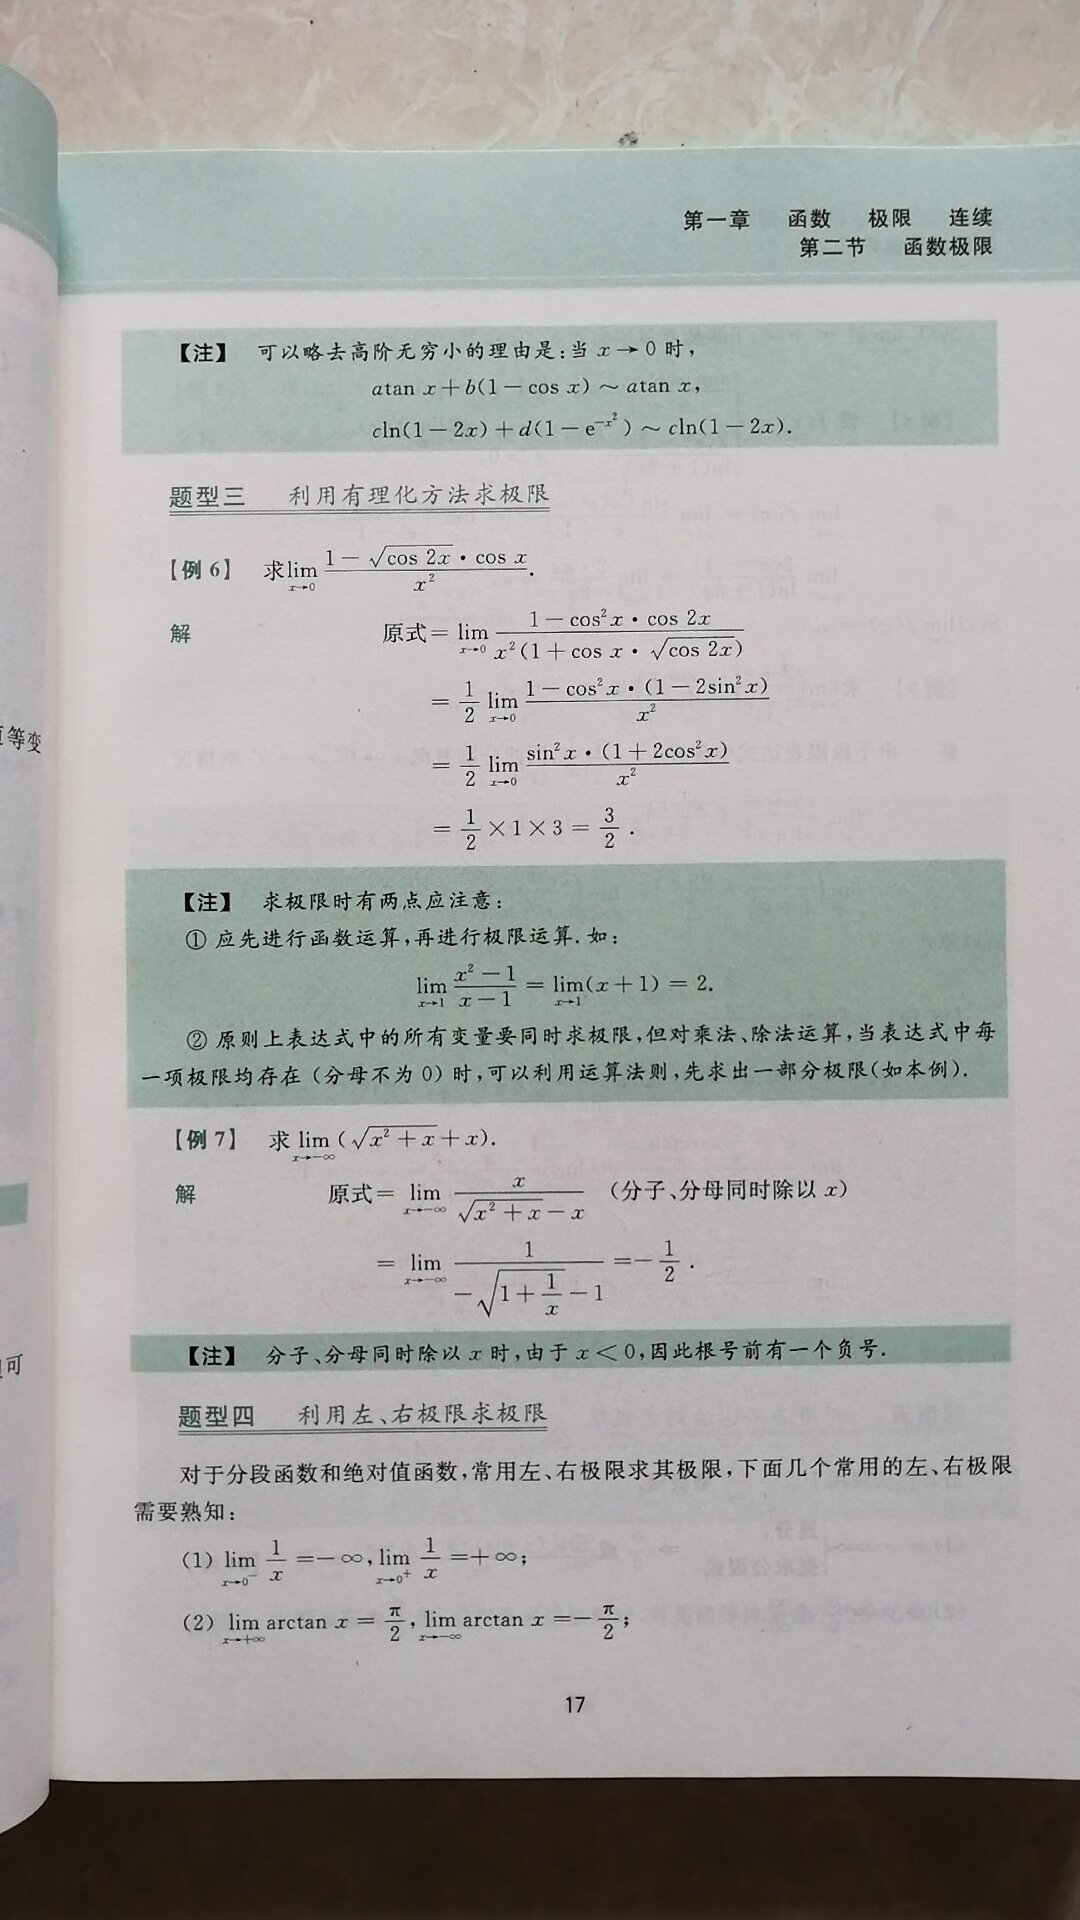 讲解独到，不拖泥带水！是一本难得的考研数学辅导书！